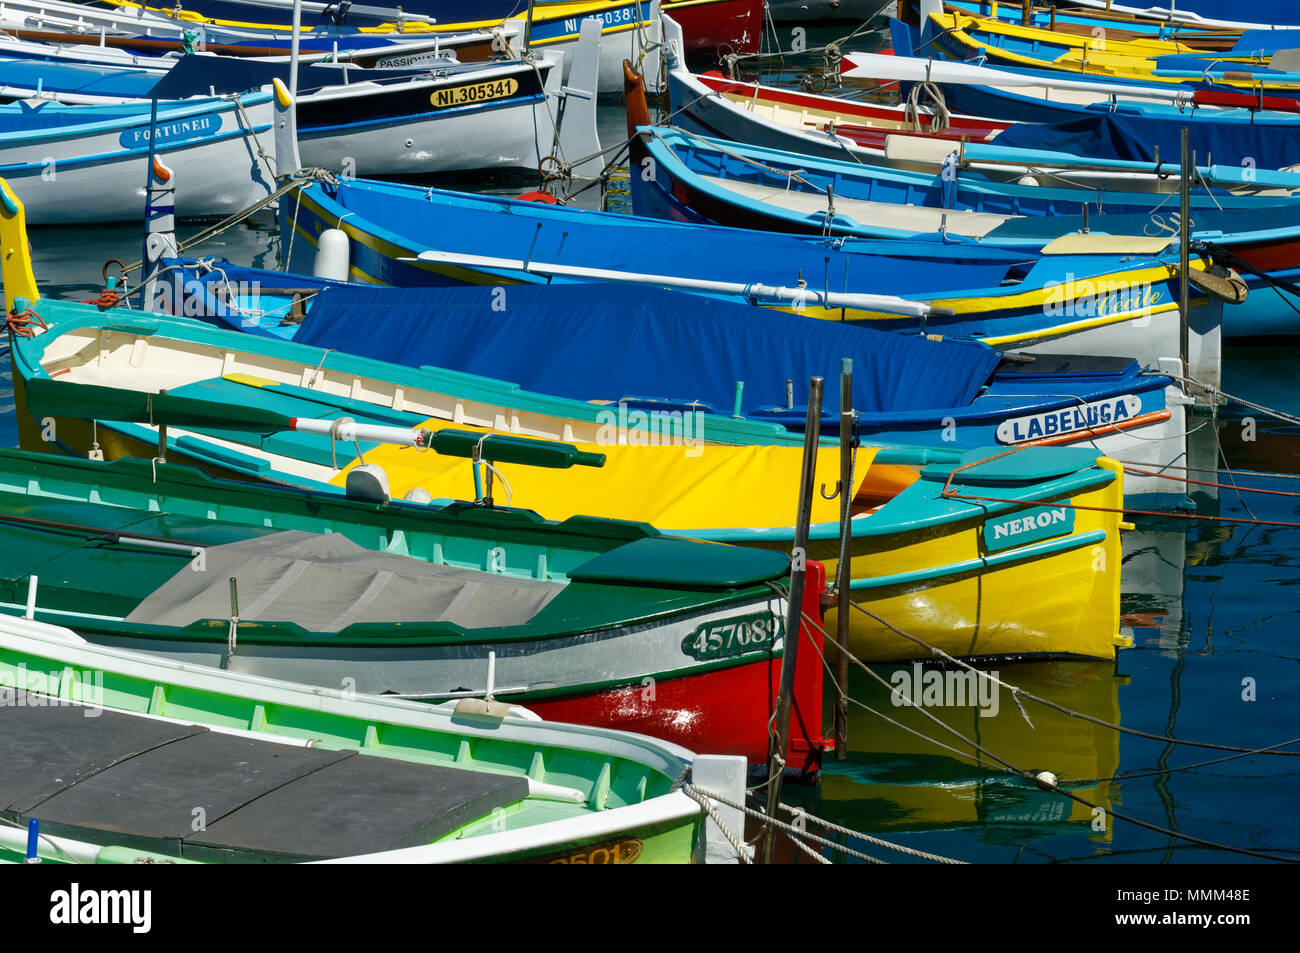 Piccolo di legno colorate barche da pesca denominato Pointus ormeggiata in porto vecchio di Nizza Costa Azzurra, Francia Foto Stock